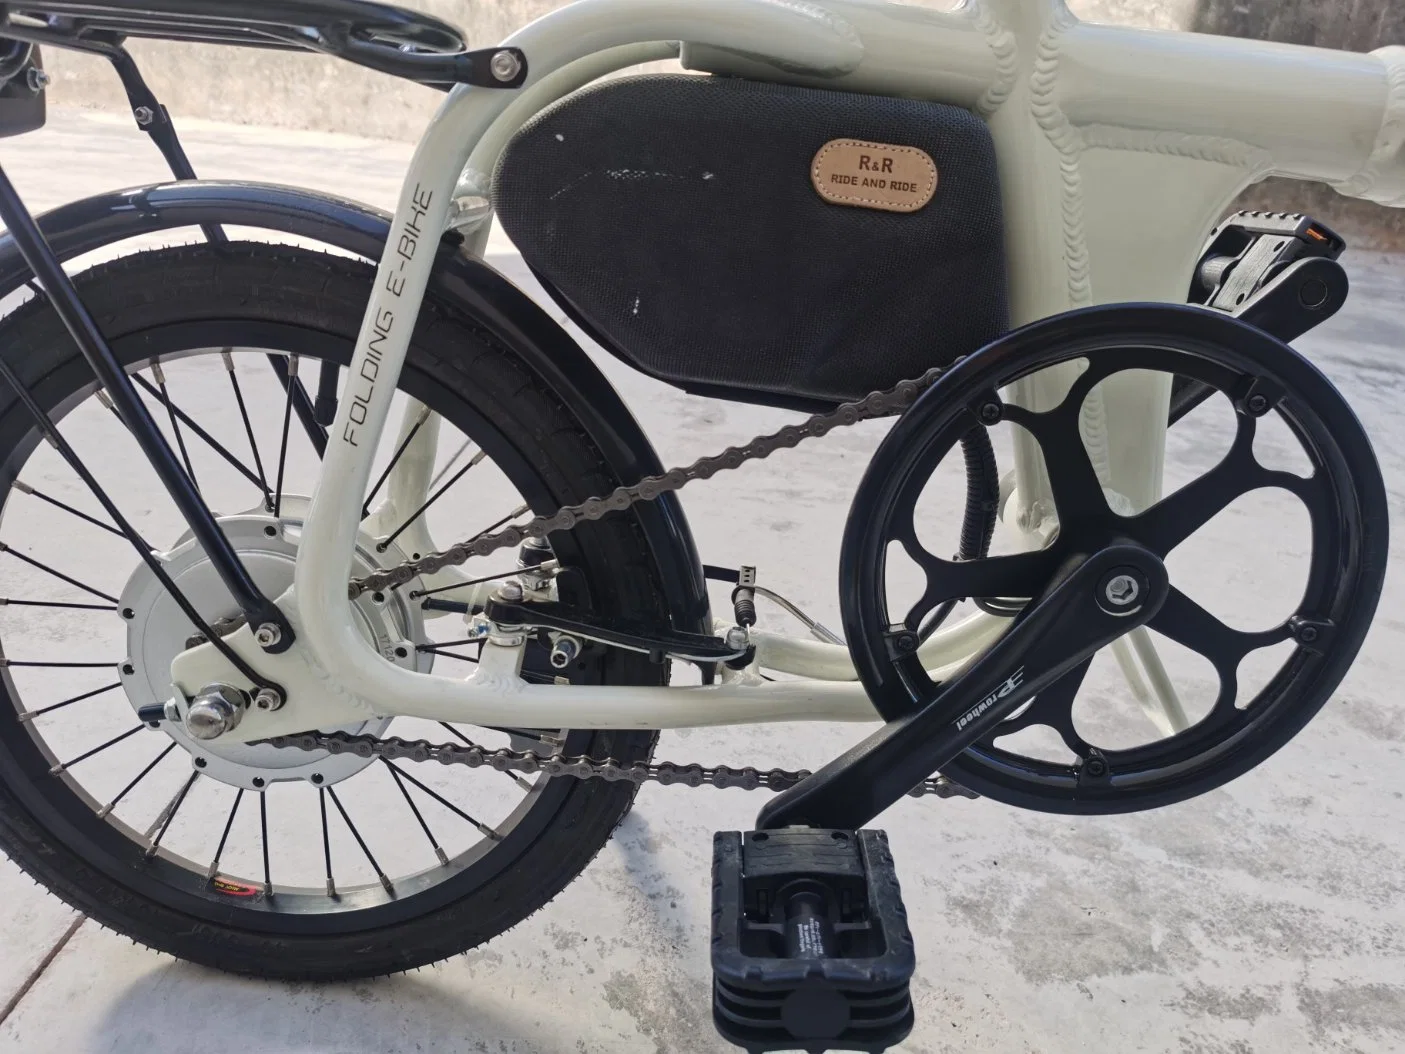 Nuevo diseño 20 pulgadas Cheap eBike 250W grasa de la bicicleta de la ciudad Neumático eléctrico bicicleta de montaña Bicicleta Eléctrica con CE